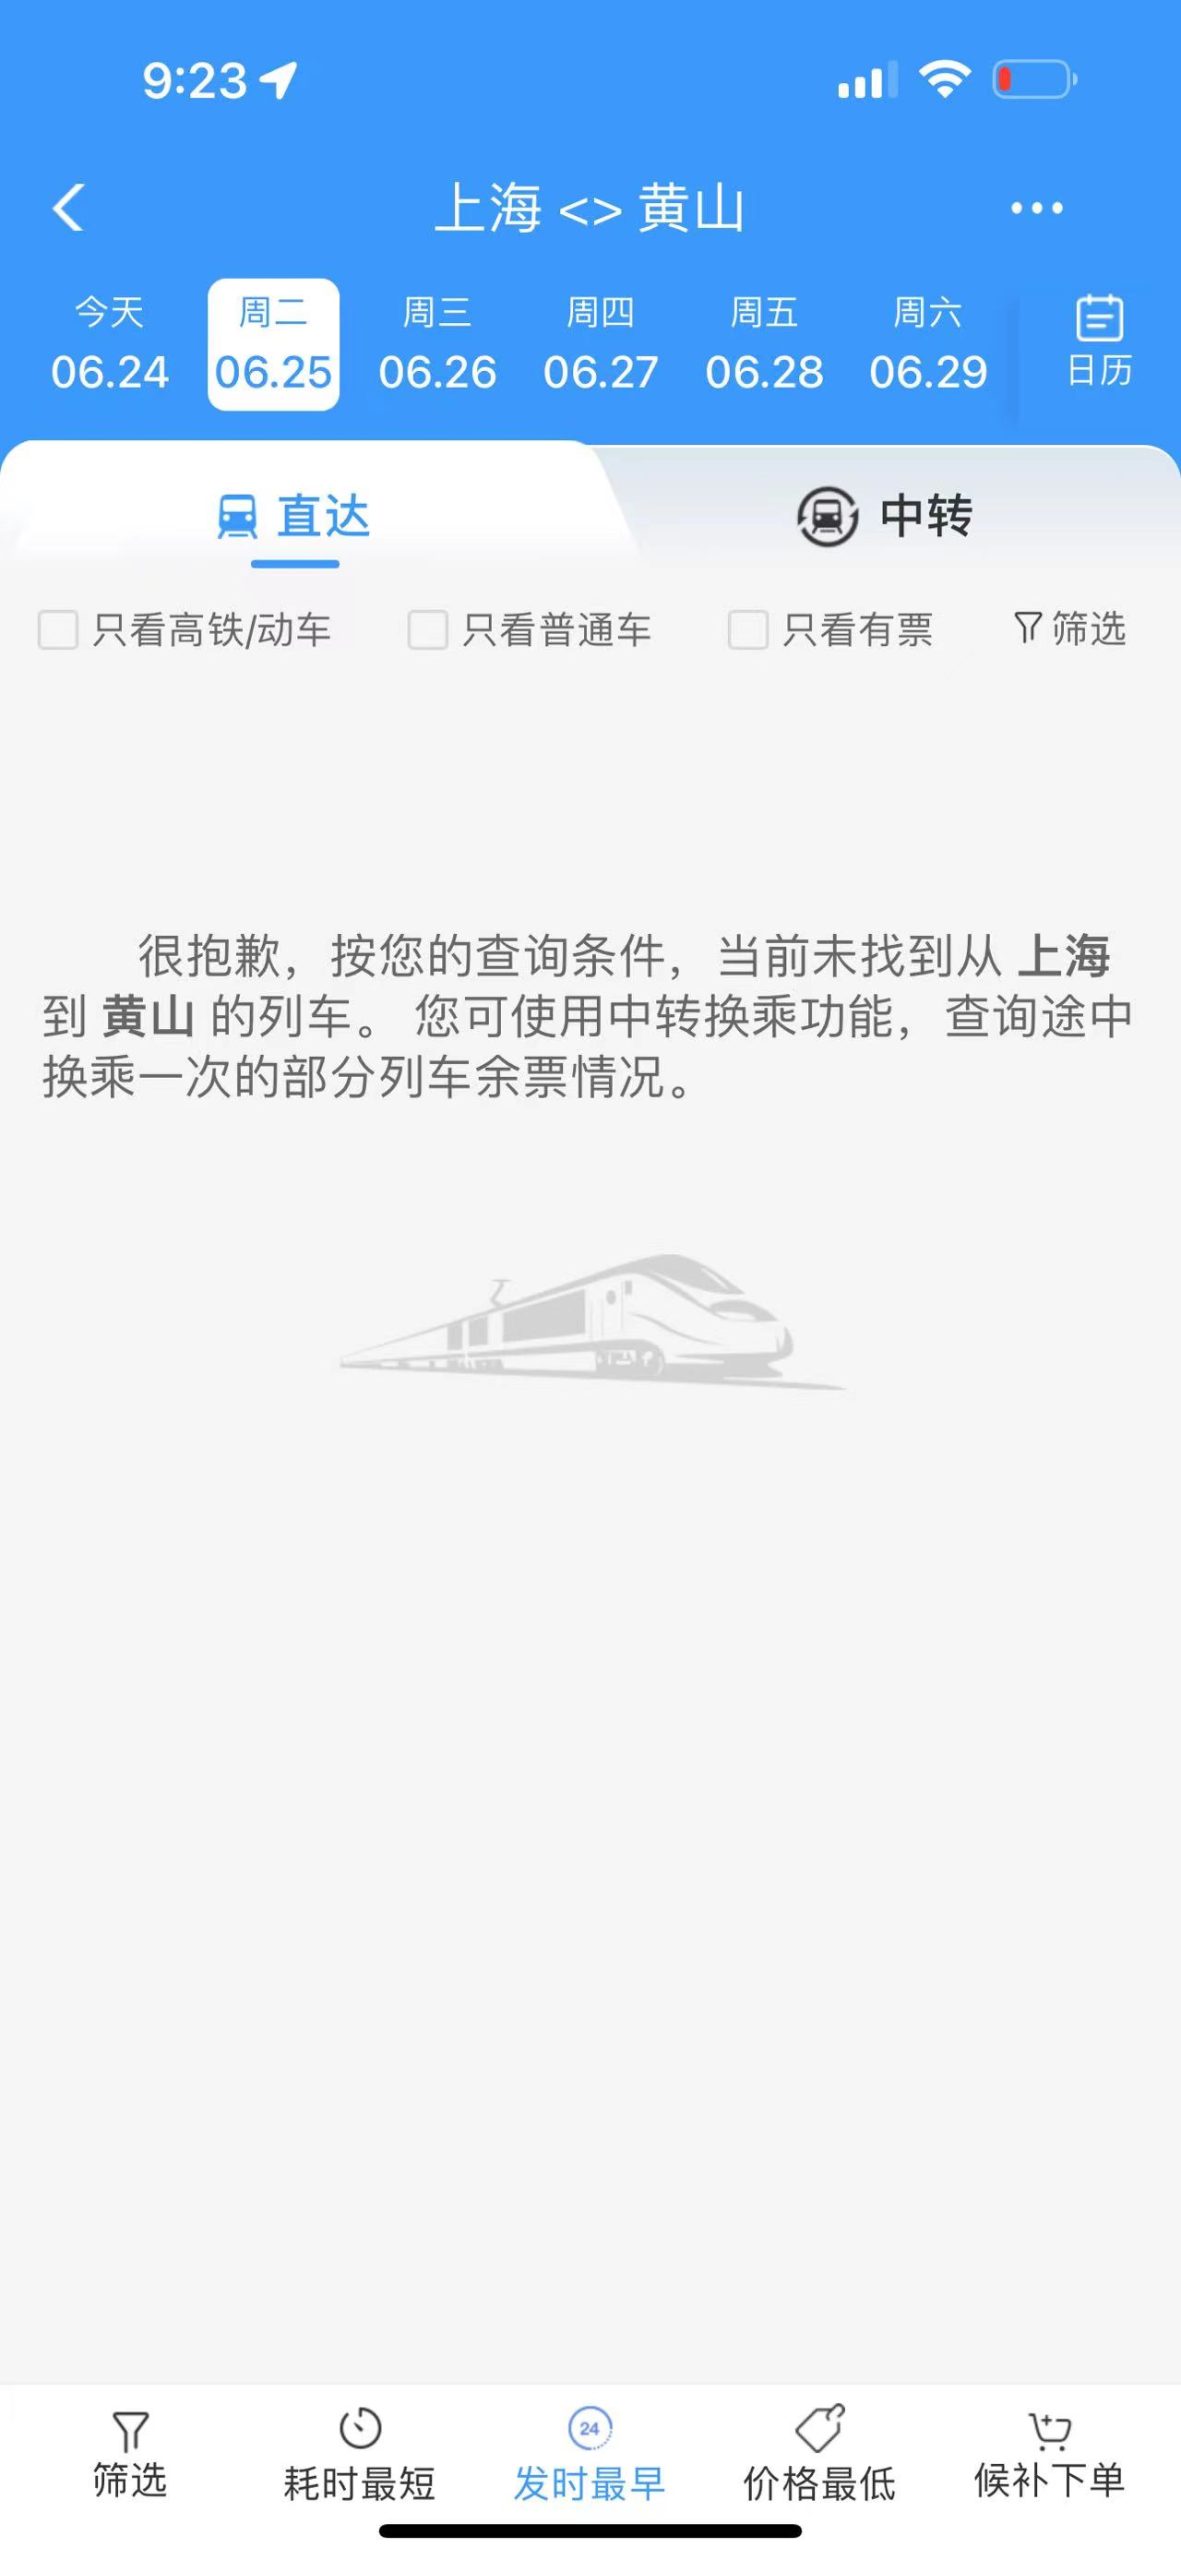 安徽浙江暴雨致部分铁路区段水灾，列车停运至26日-公闻财经